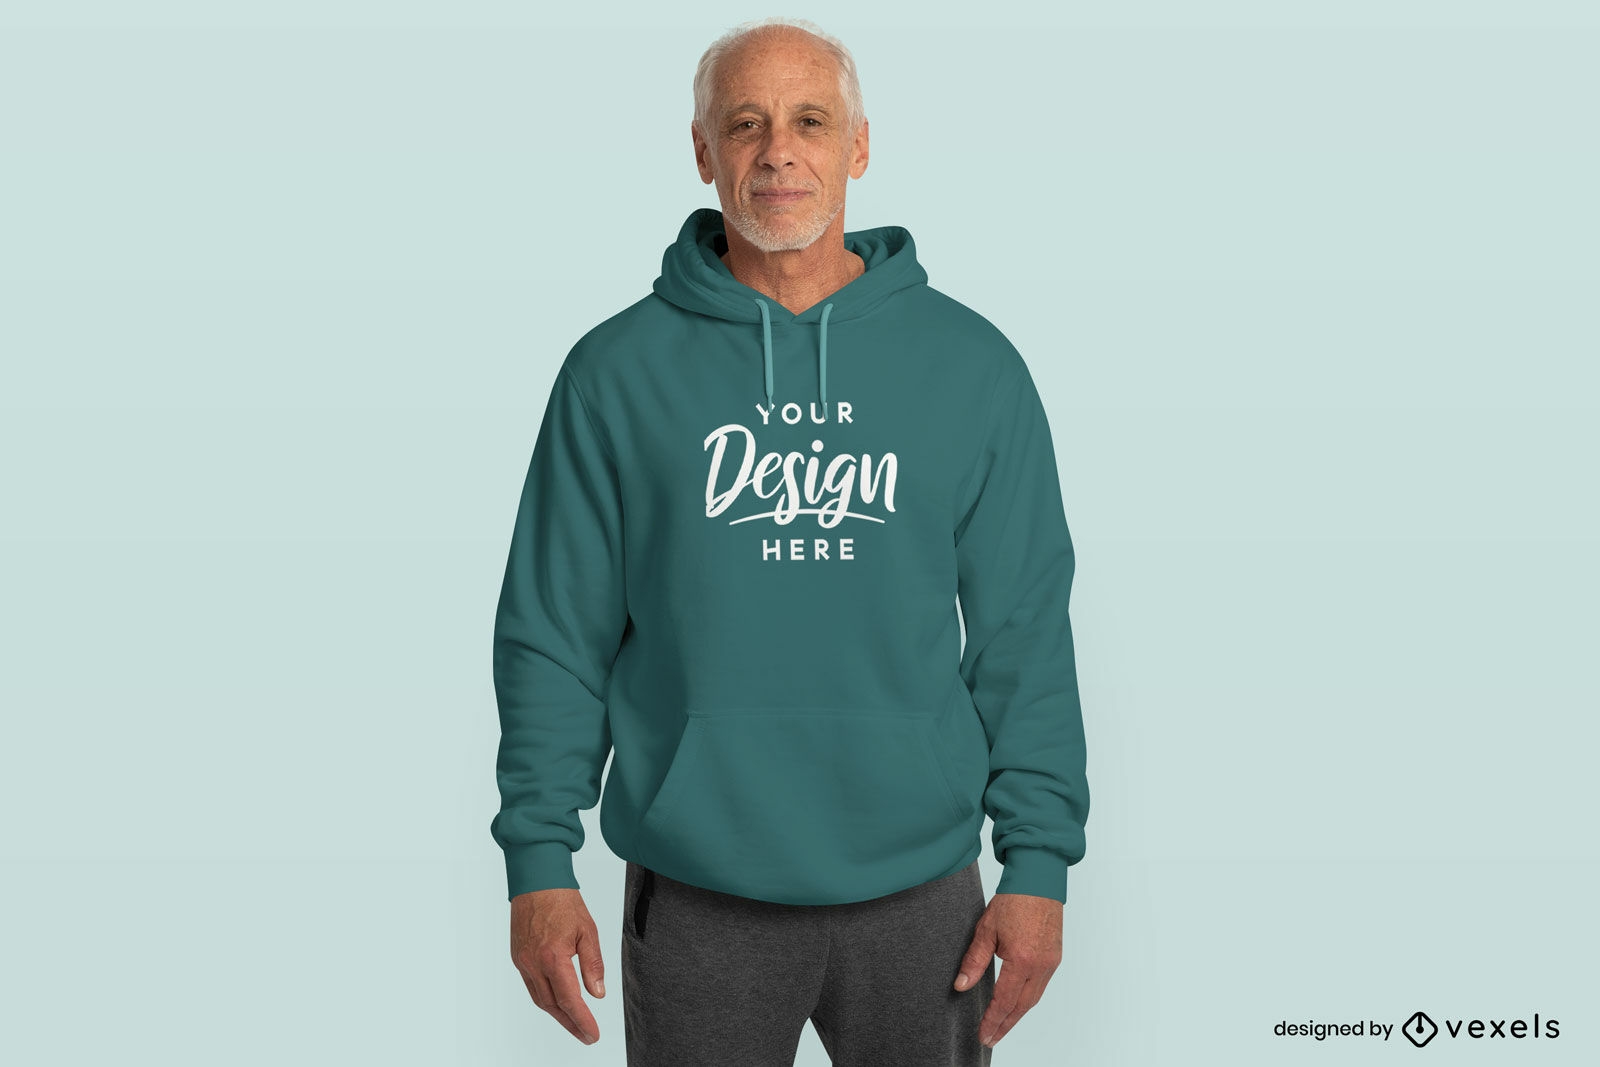 Older male model smiling in hoodie mockup